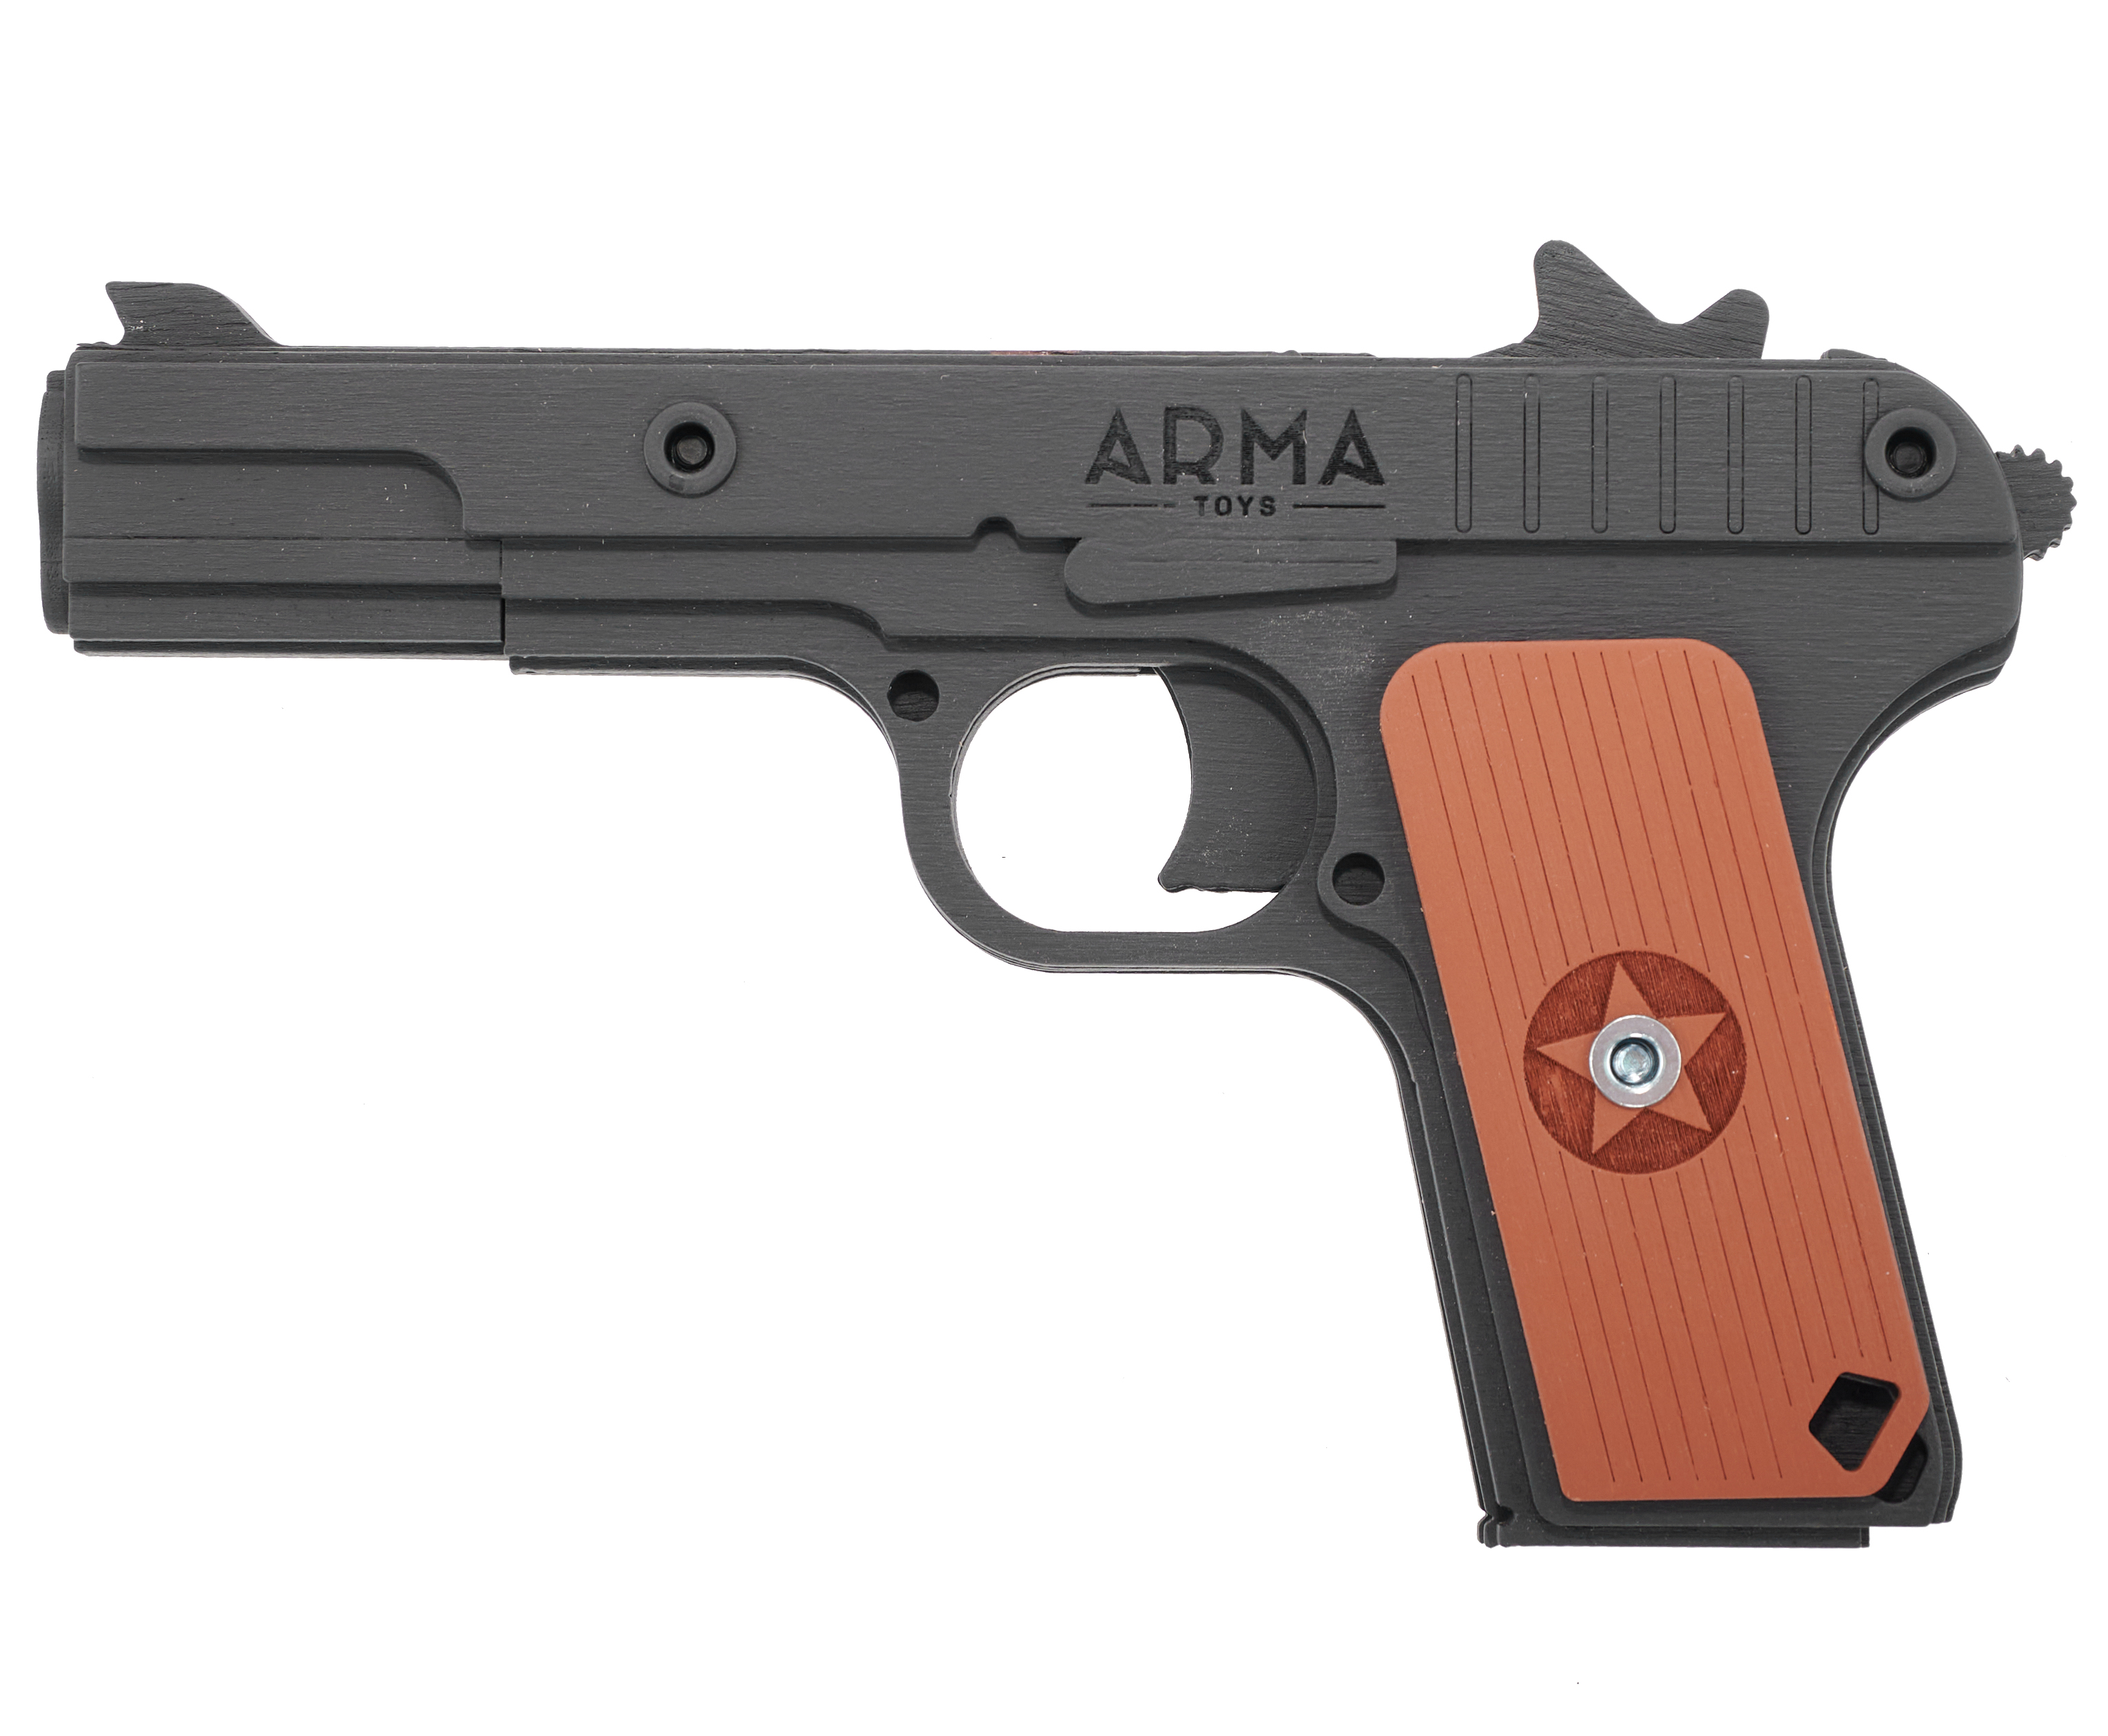 Резинкострел игрушечный Arma toys пистолет ТТ макет, Тульский Токарев, AT019k, окрашенный резинкострел arma toys пистолет тт тульский токарева